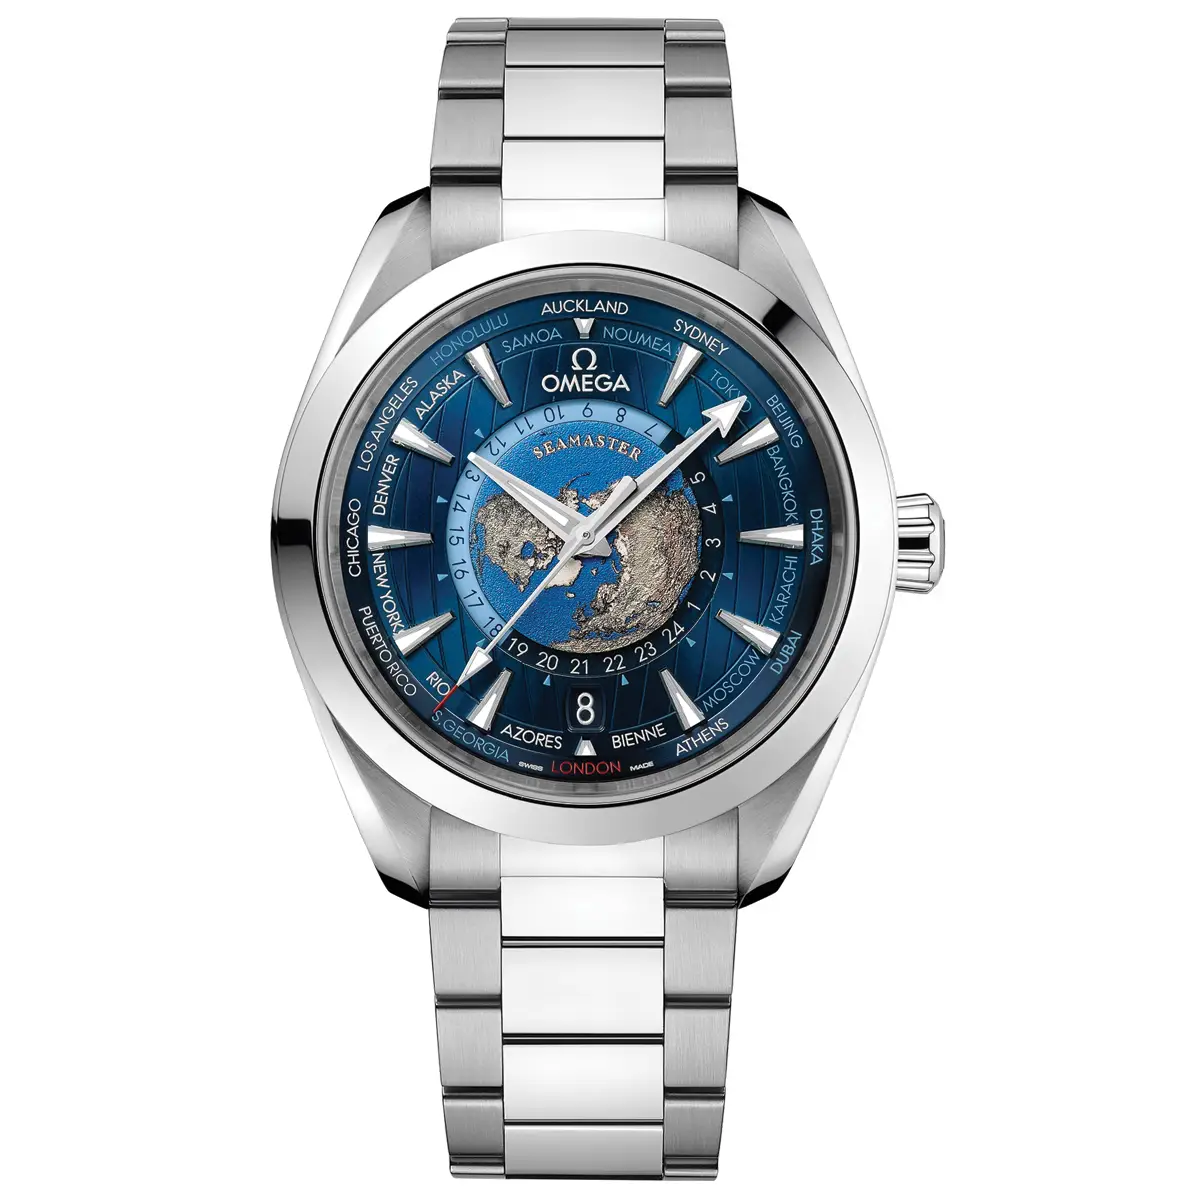 Đồng hồ Omega Seamaster Aqua Terra GMT Worldtimer 220.10.43.22.03.001 mặt số màu xanh. Thiết kế lộ cơ. Dây đeo bằng thép. Thân vỏ bằng thép.